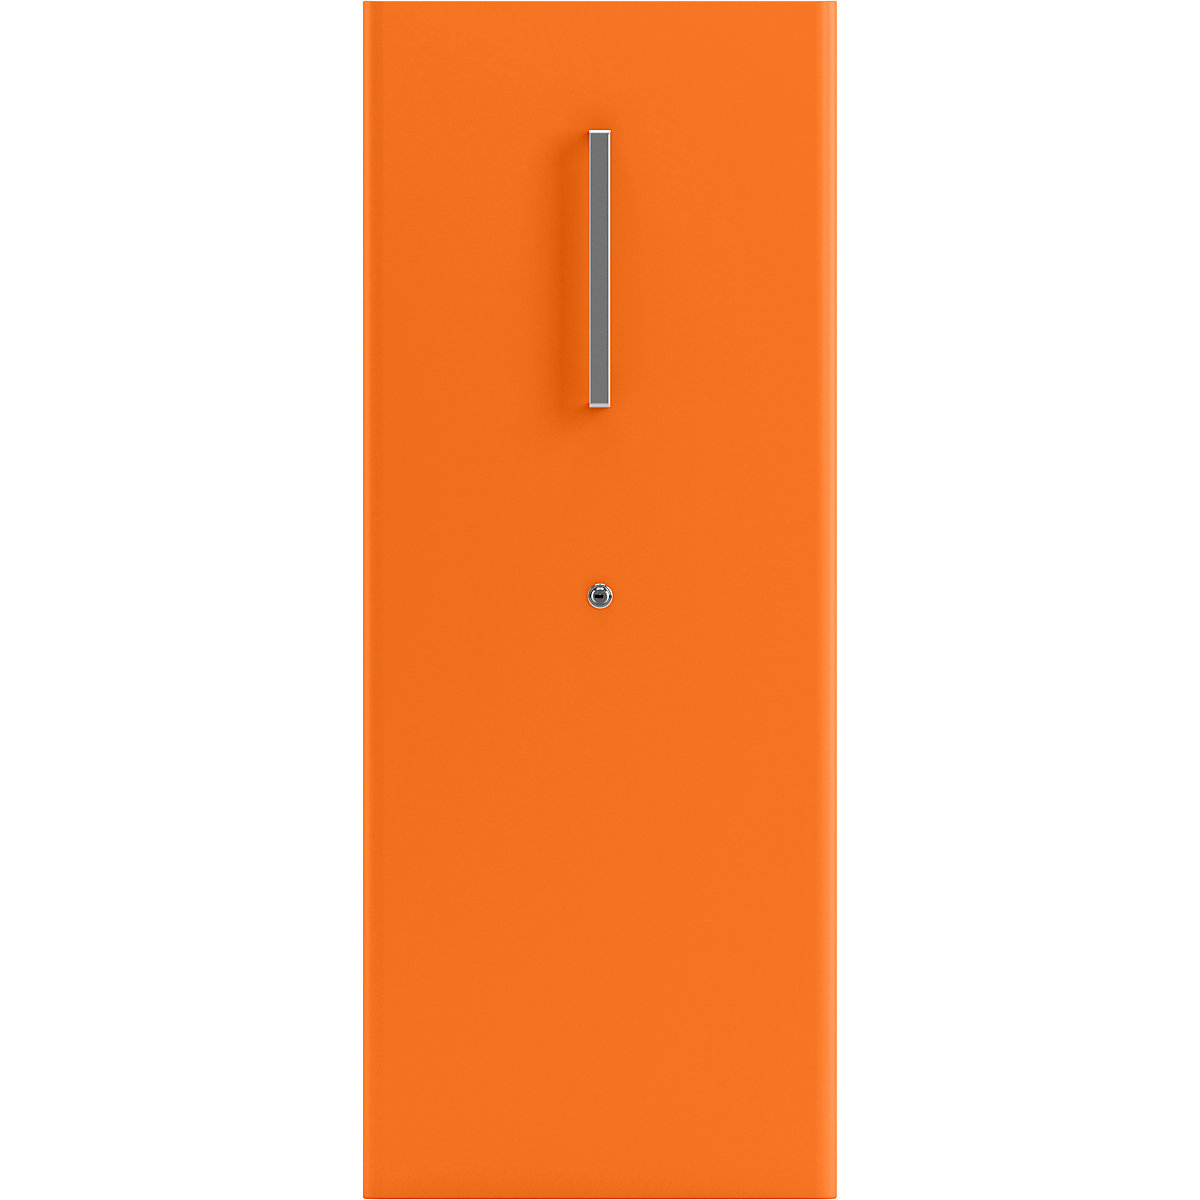 Večnamenski predalnik Tower™ 4, z vrhnjo ploščo – BISLEY (Slika izdelka 2)-1